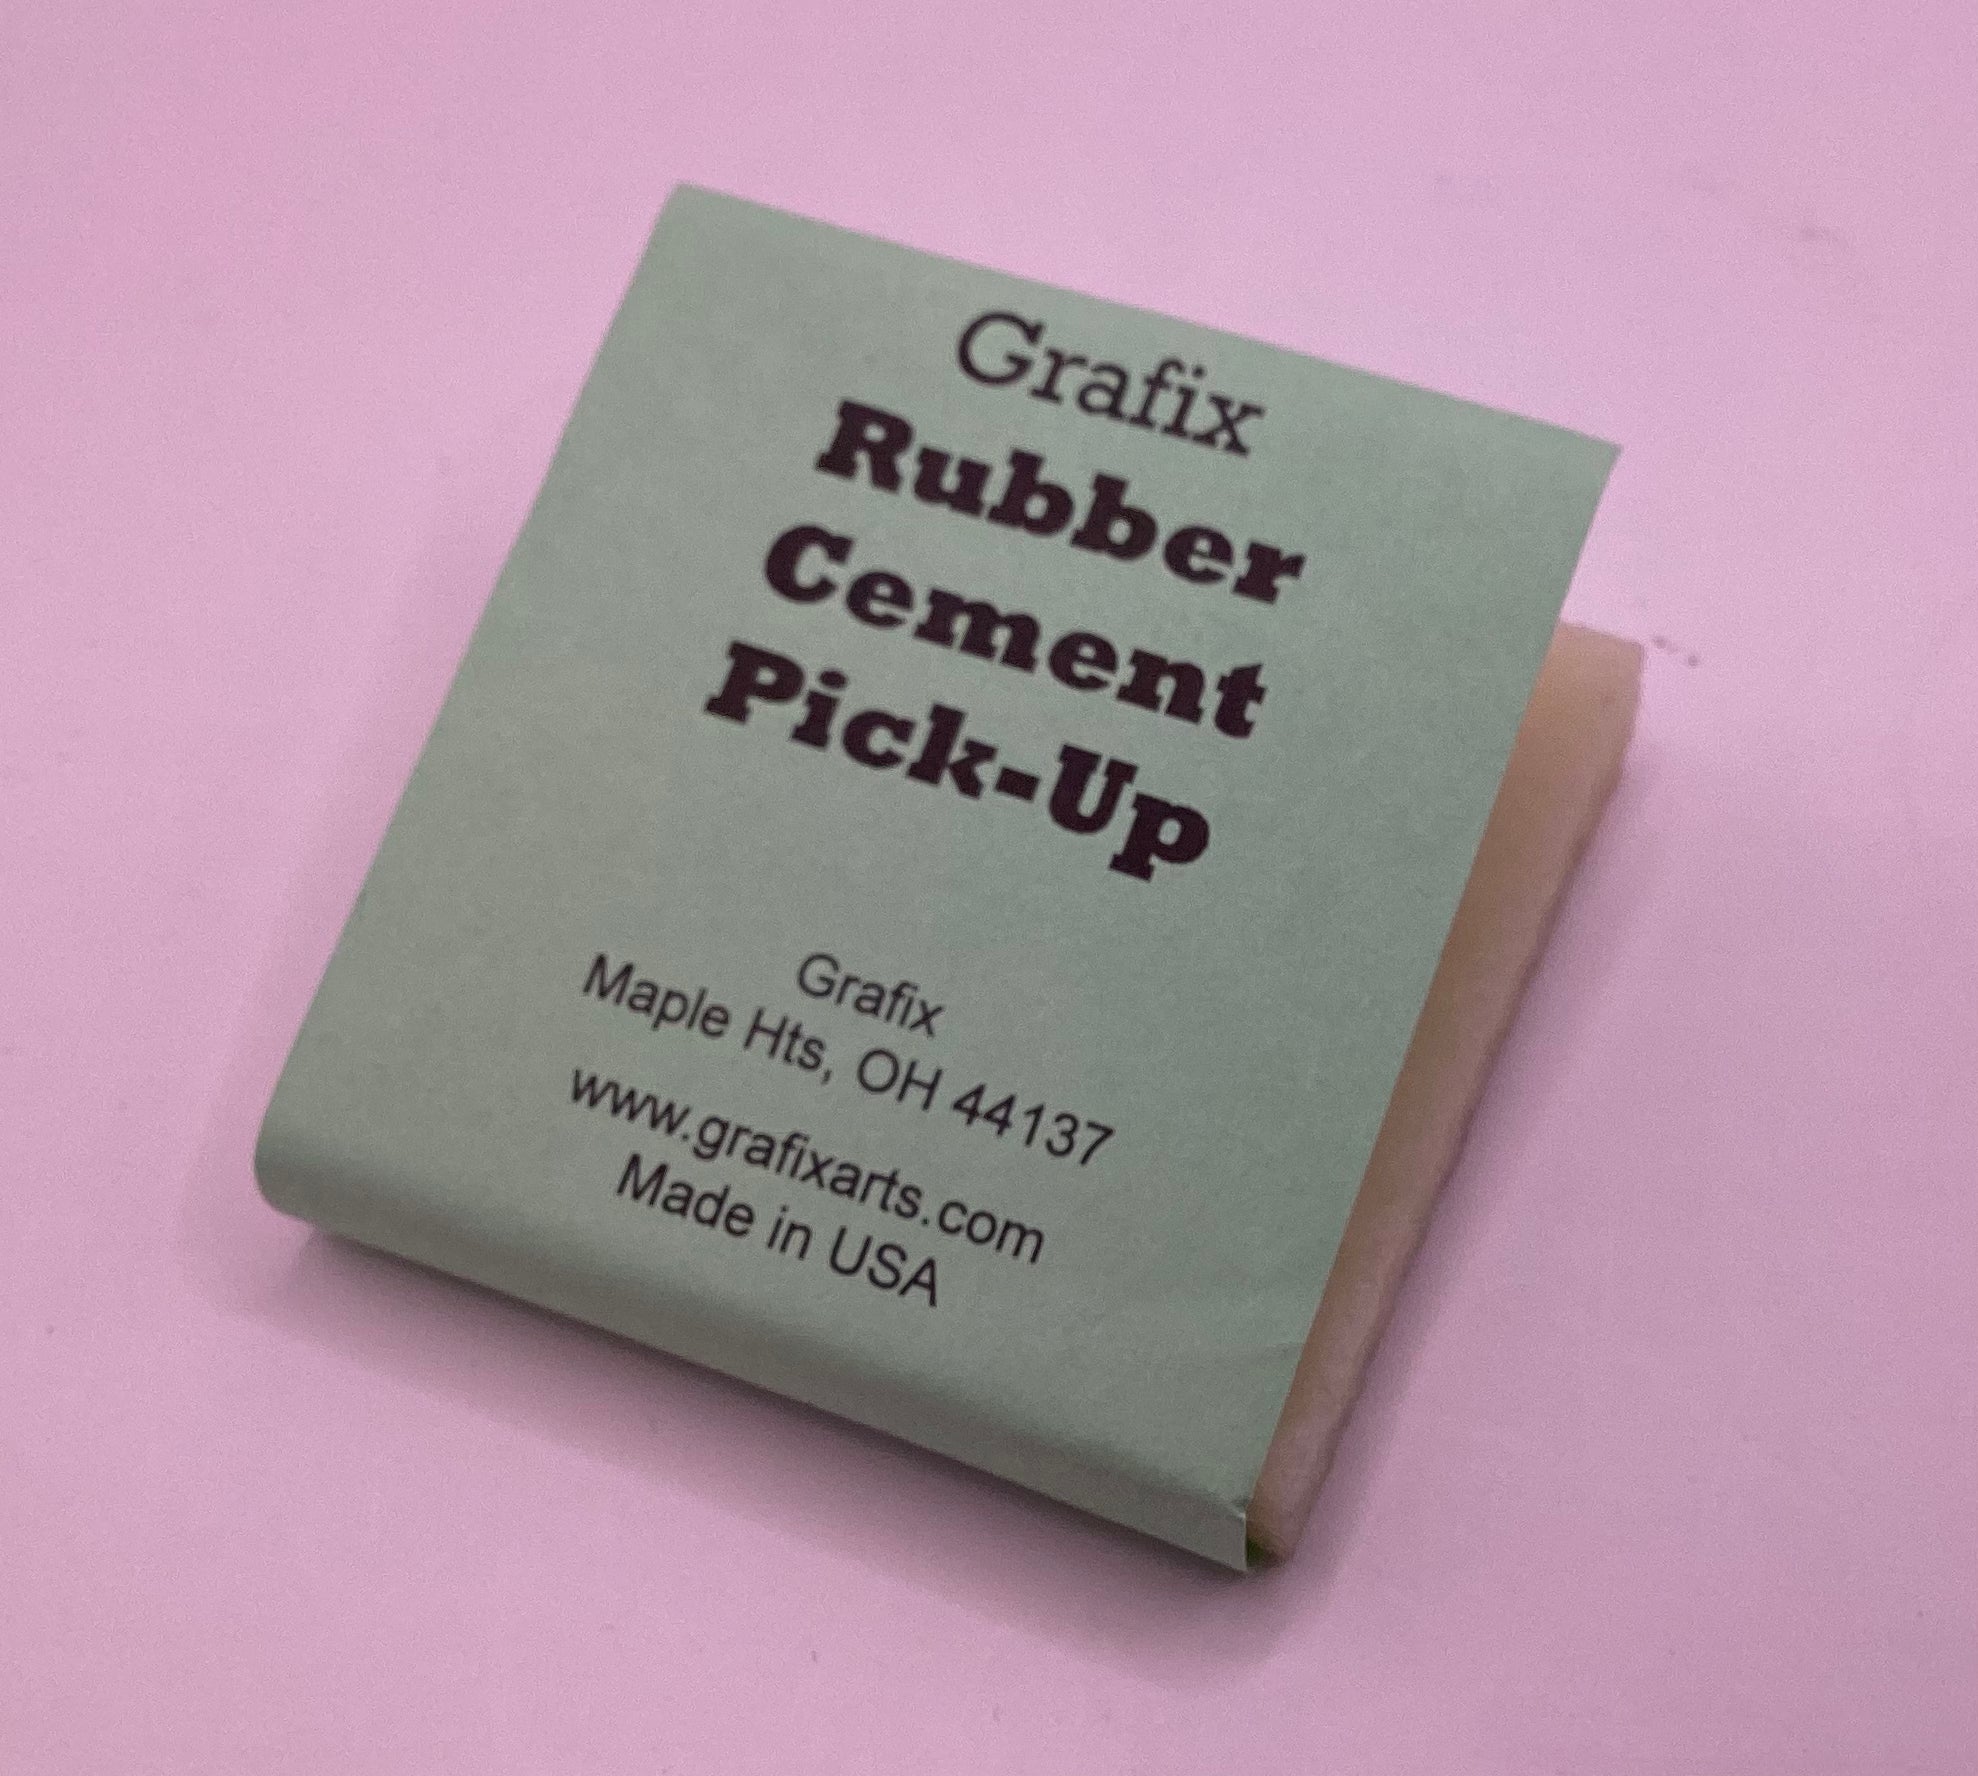 Grafix Rubber Cement Pick-up 